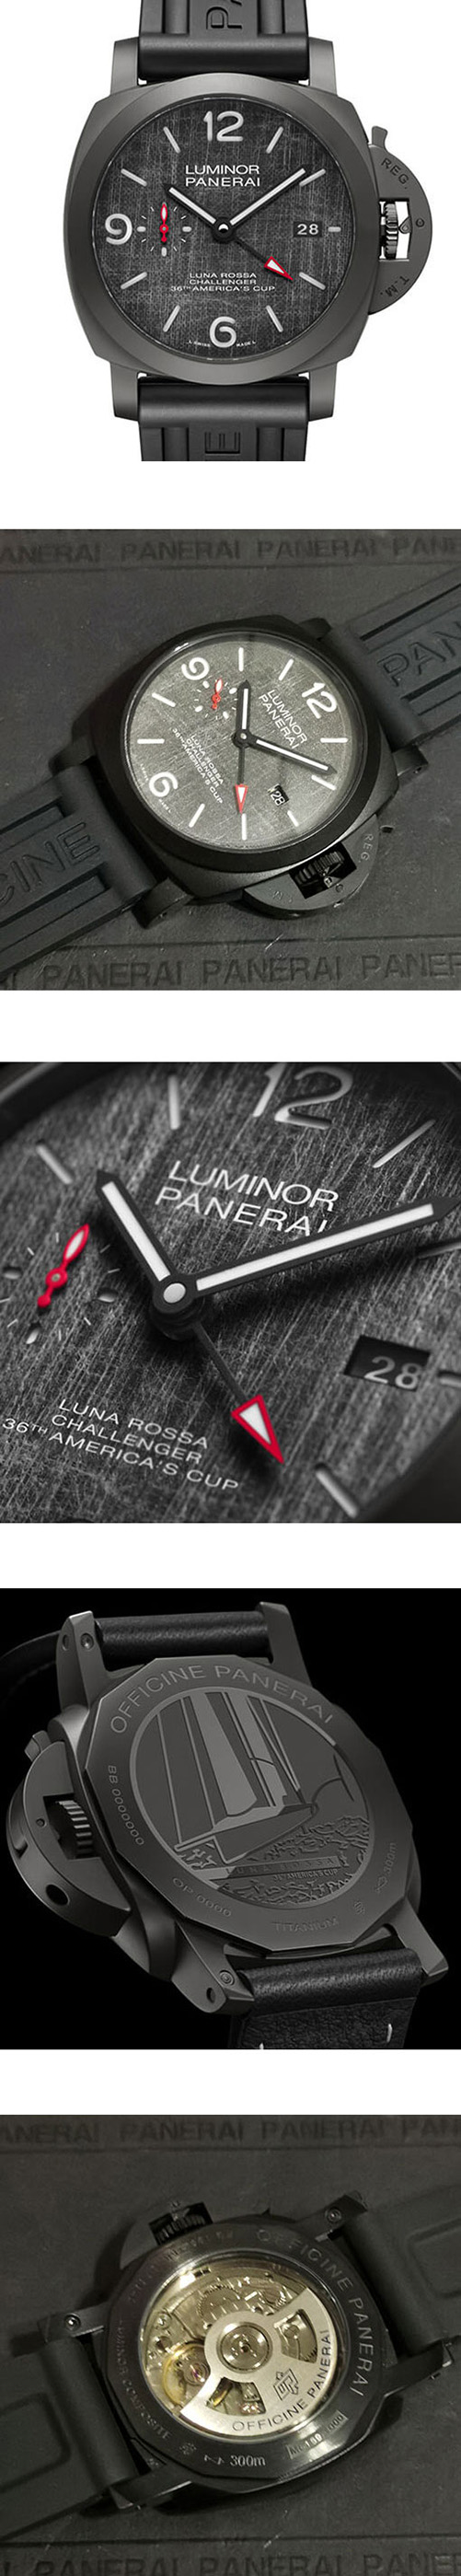 パネライPAM01036ルミノール1950 ＧＭＴ レプリカ時計【30気圧】